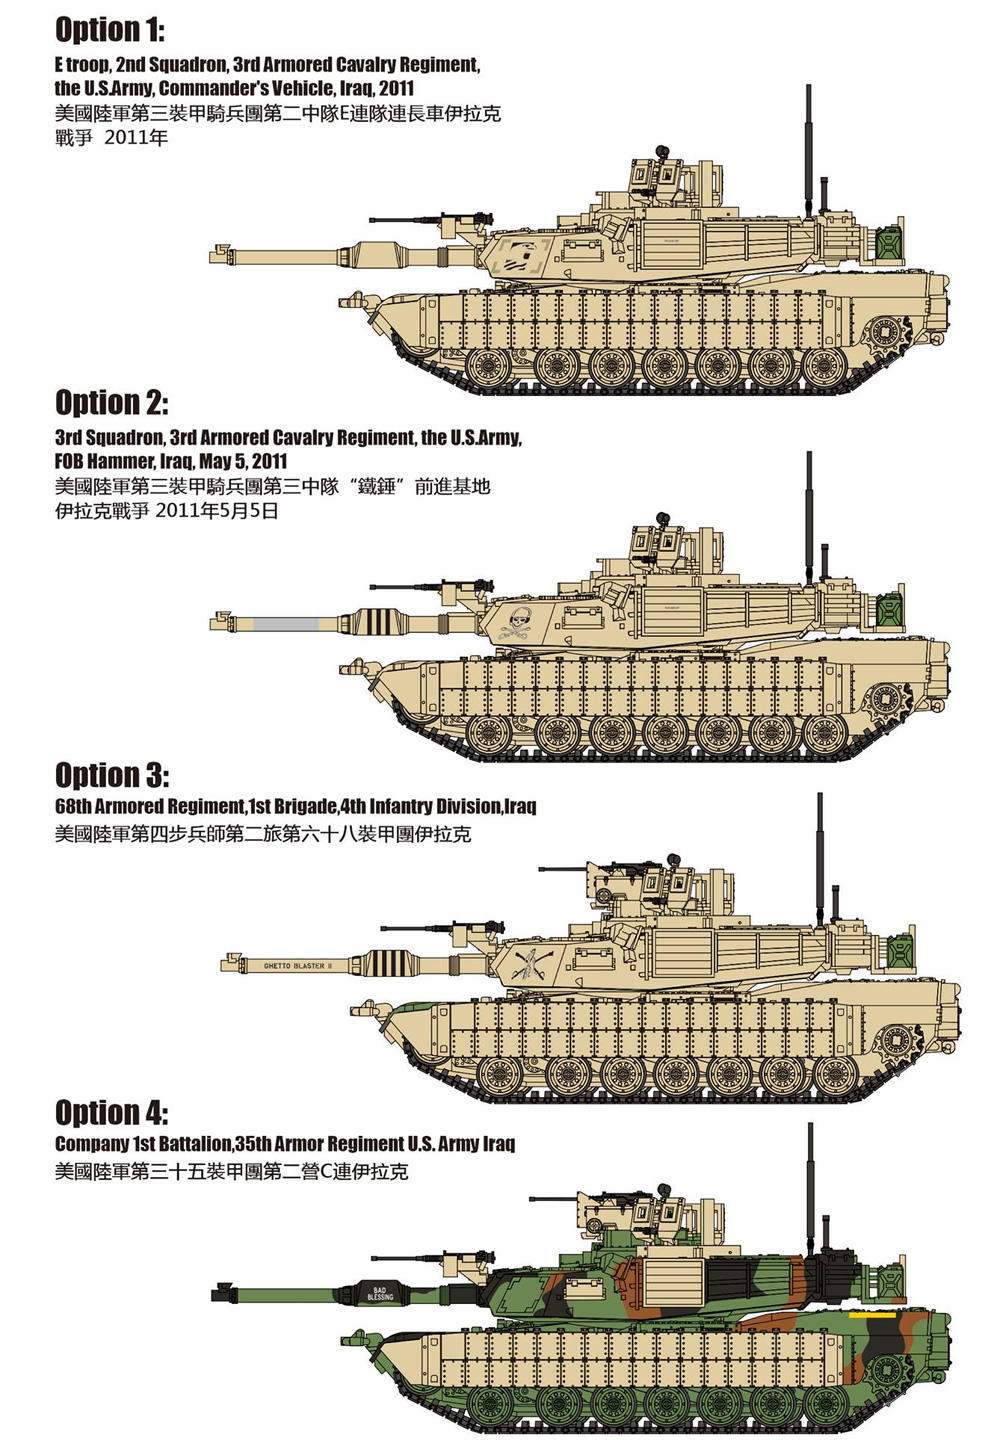 エイブラムス戦車用 TUSK 1 w/M153 CROWS 2 パーツセット (2セット入り) プラモデル (ティーモデル 1/72 ミリタリー プラモデル No.TMOA72004) 商品画像_2